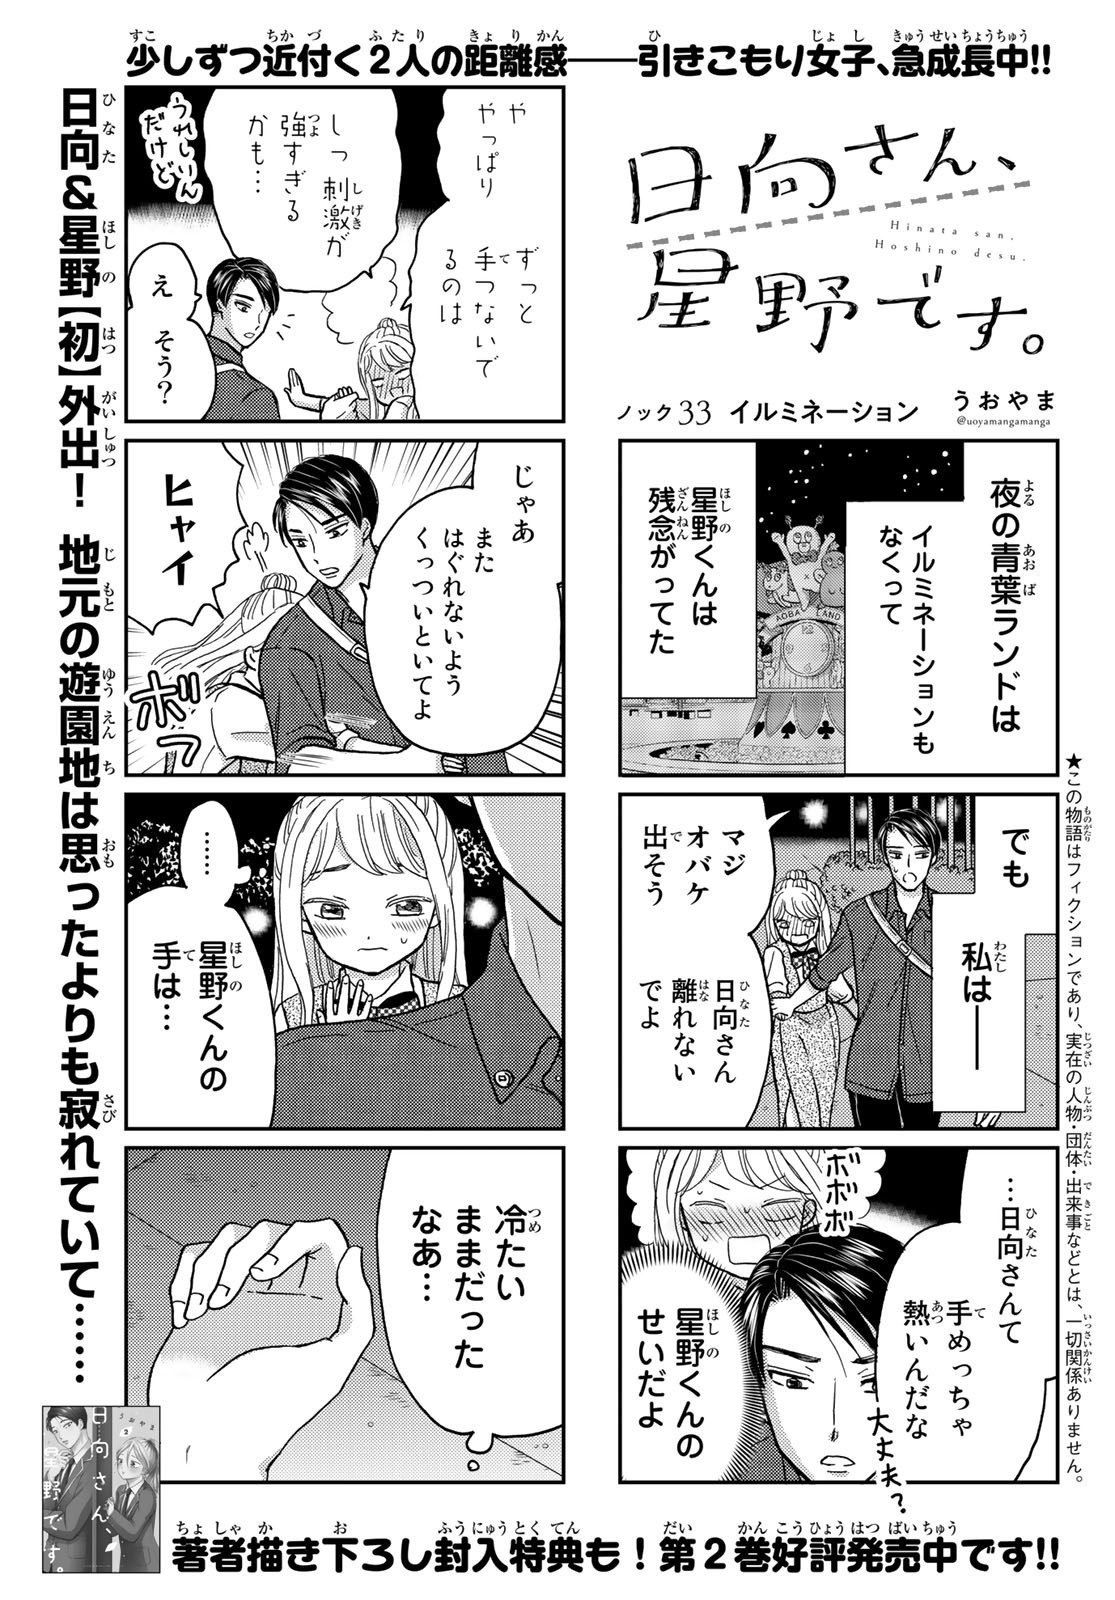 Hinata-san, Hoshino desu. - Chapter 033 - Page 1